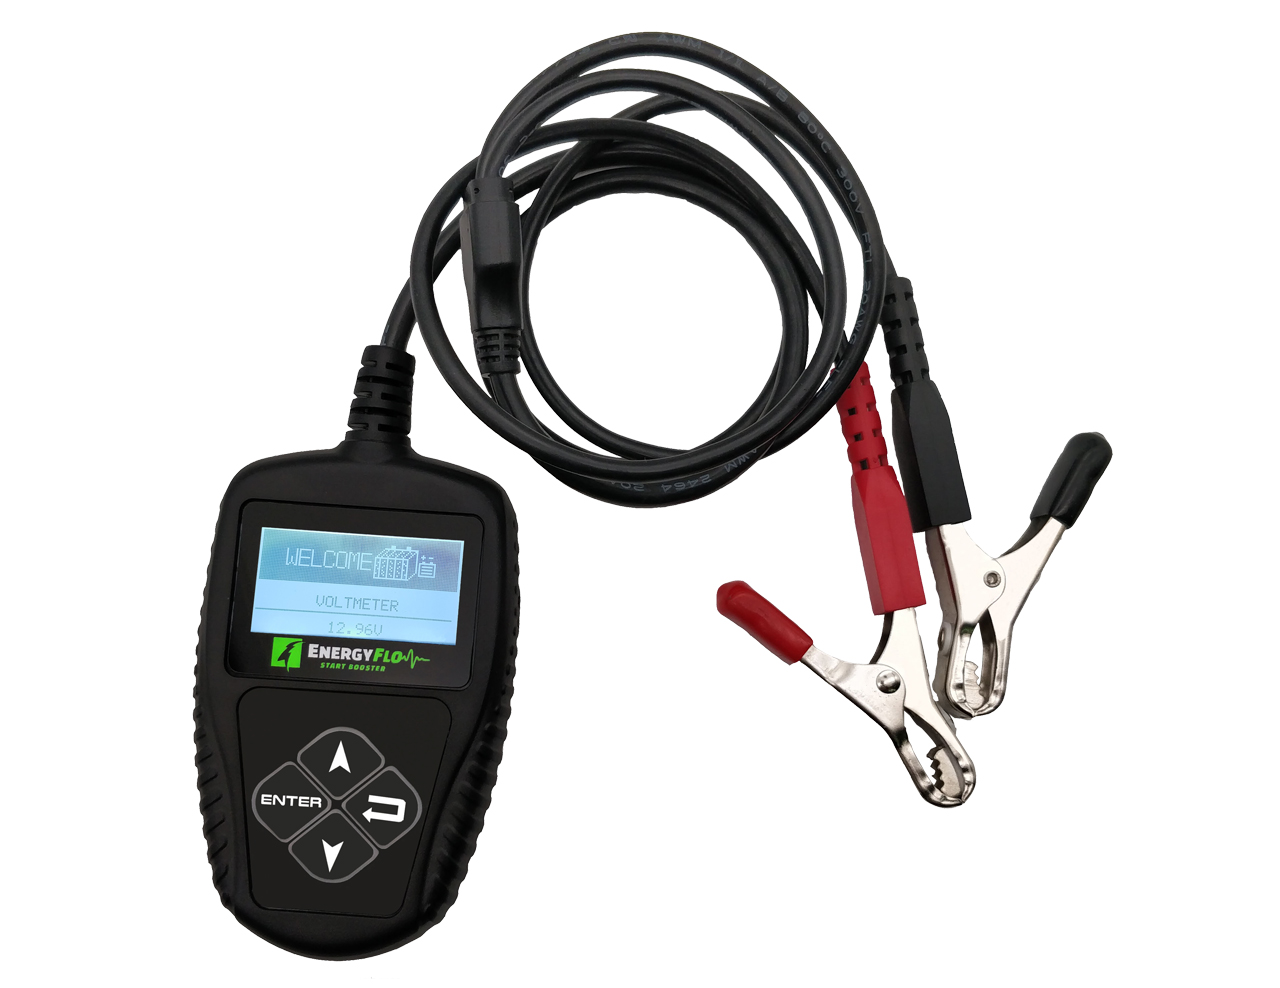 tester batteria RT777 - SINCRO automotive tester attrezzature diagnostiche  per officine